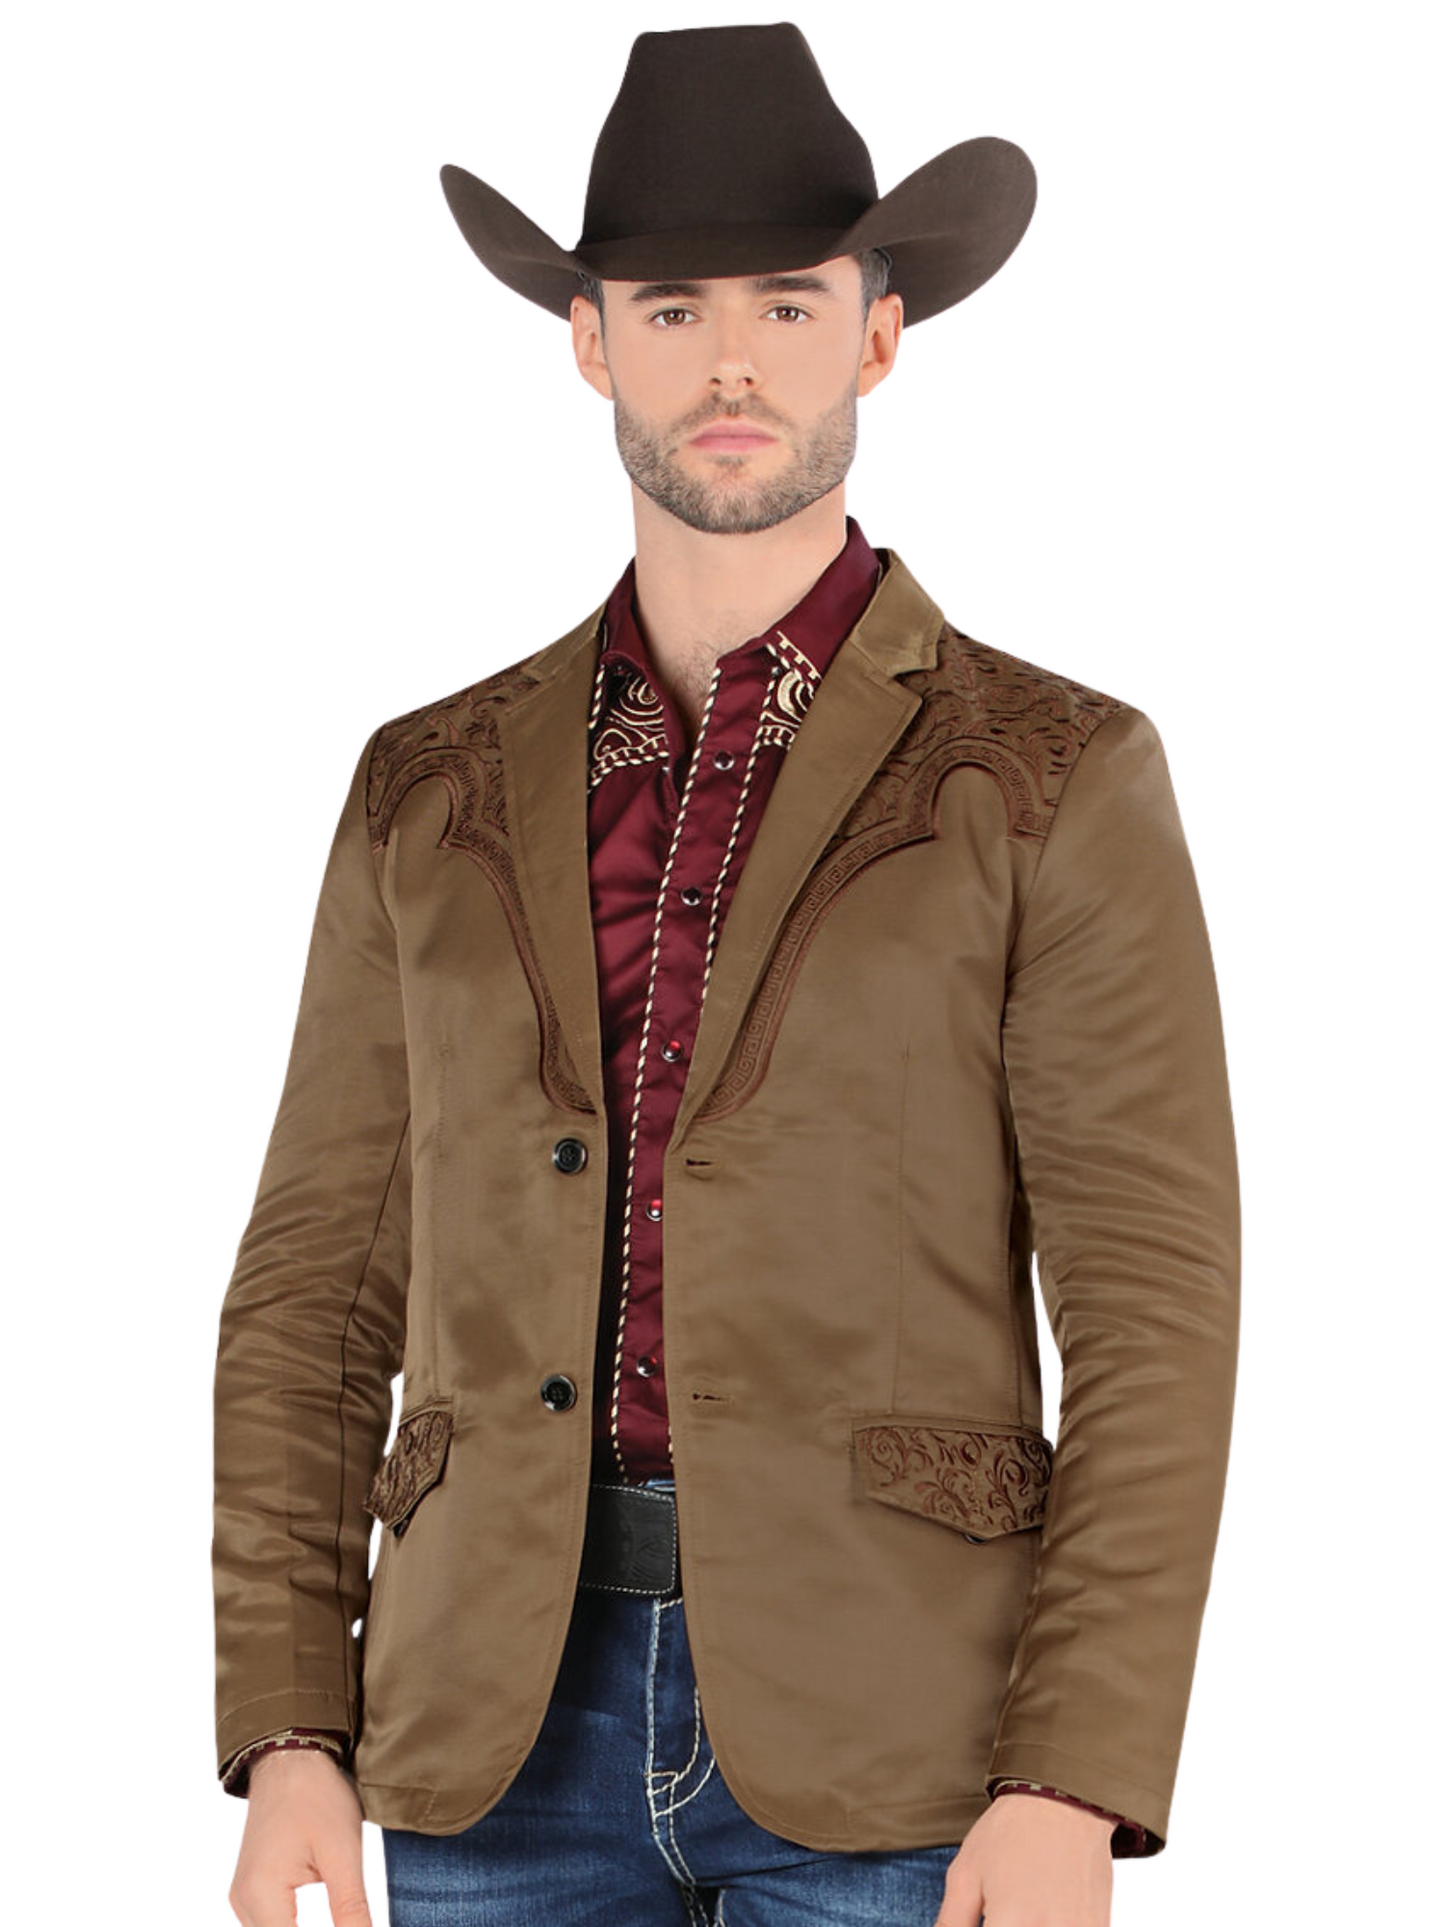 Embroidered Denim Jacket for Men 'Montero' - ID: 2179 Western Blazer Montero Light Brown